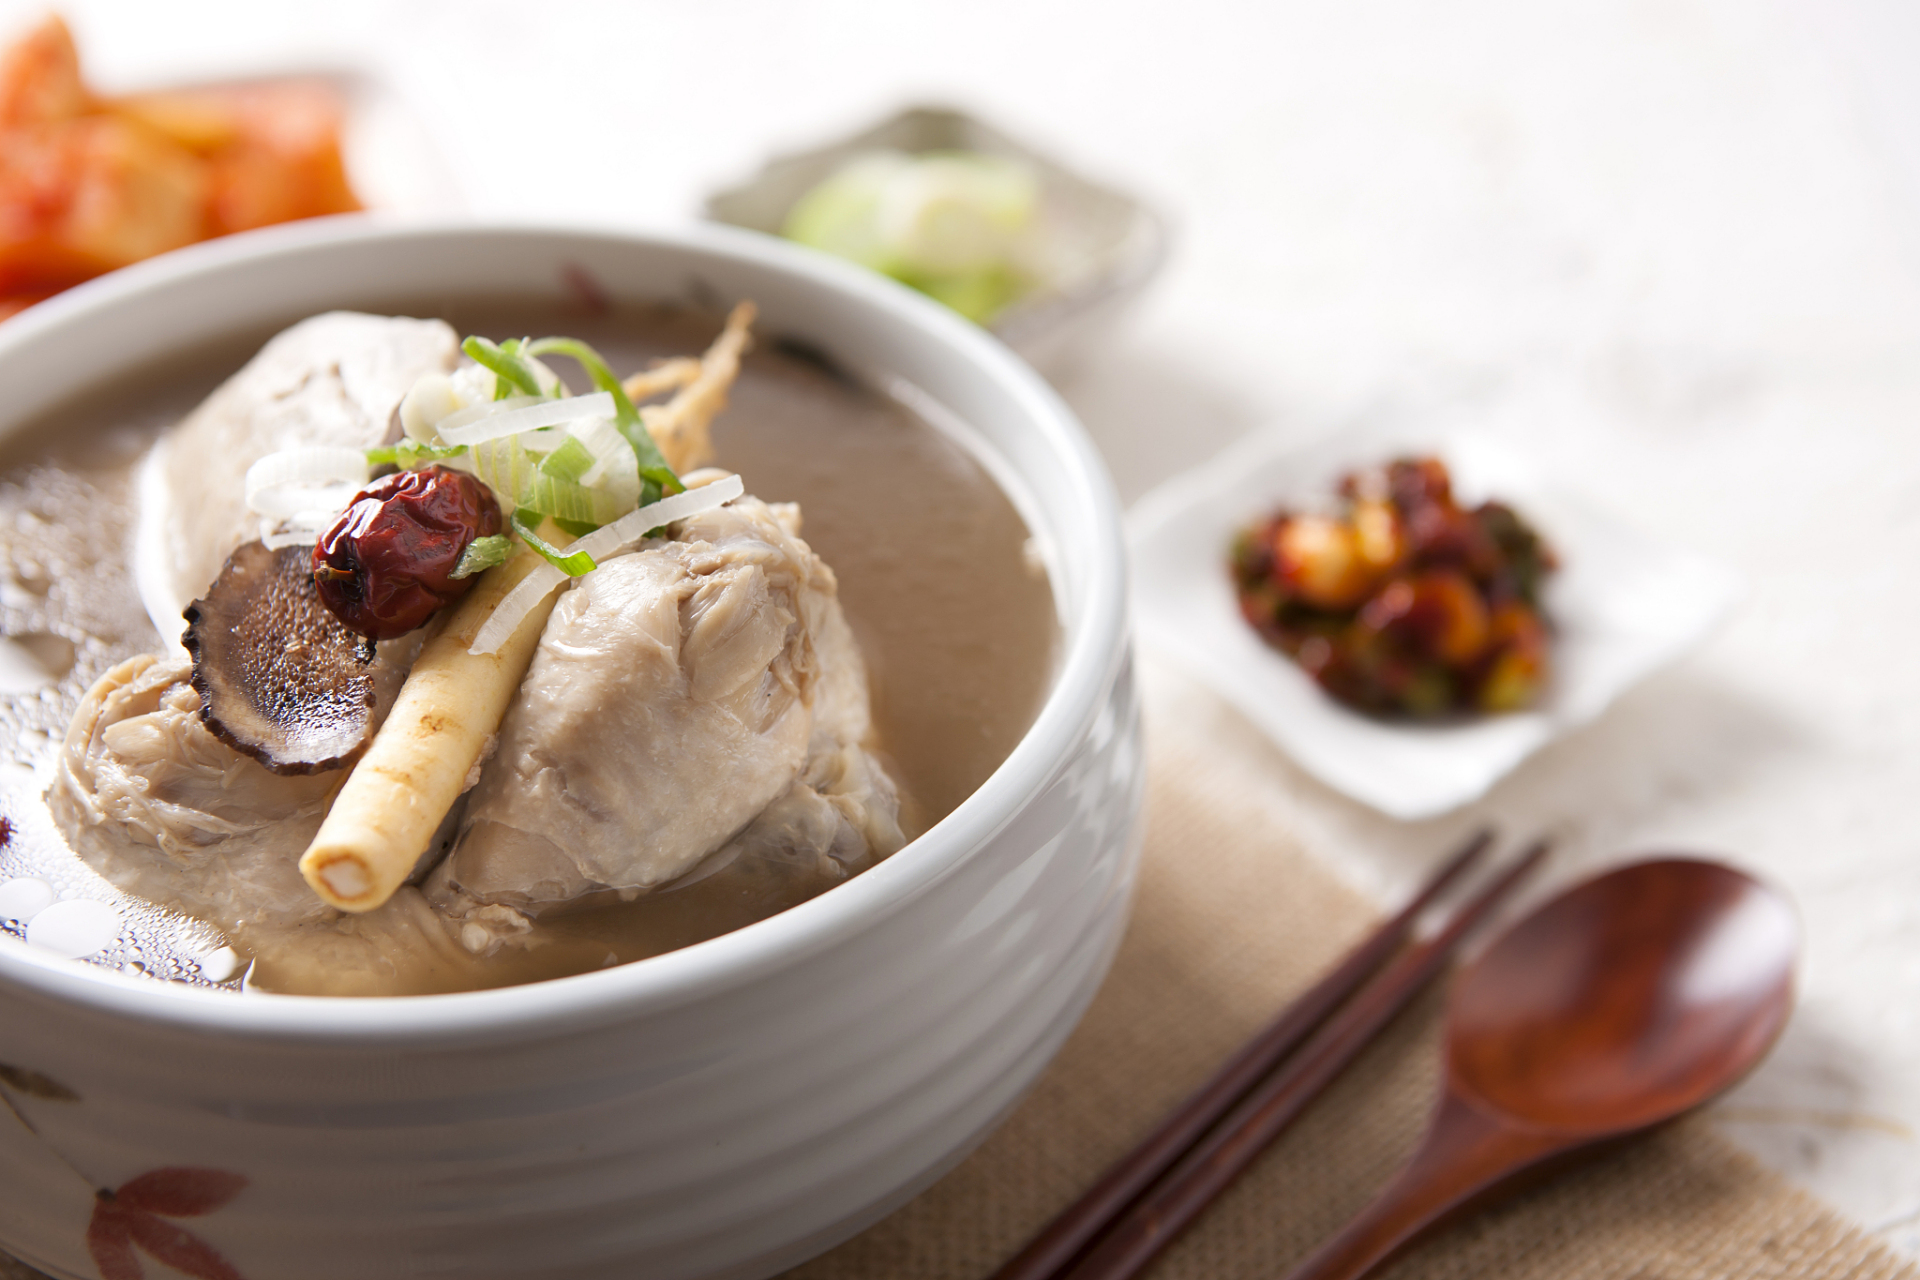 粉葛薏米猪骨汤是一道美味佳肴,更是一杯养生的良方